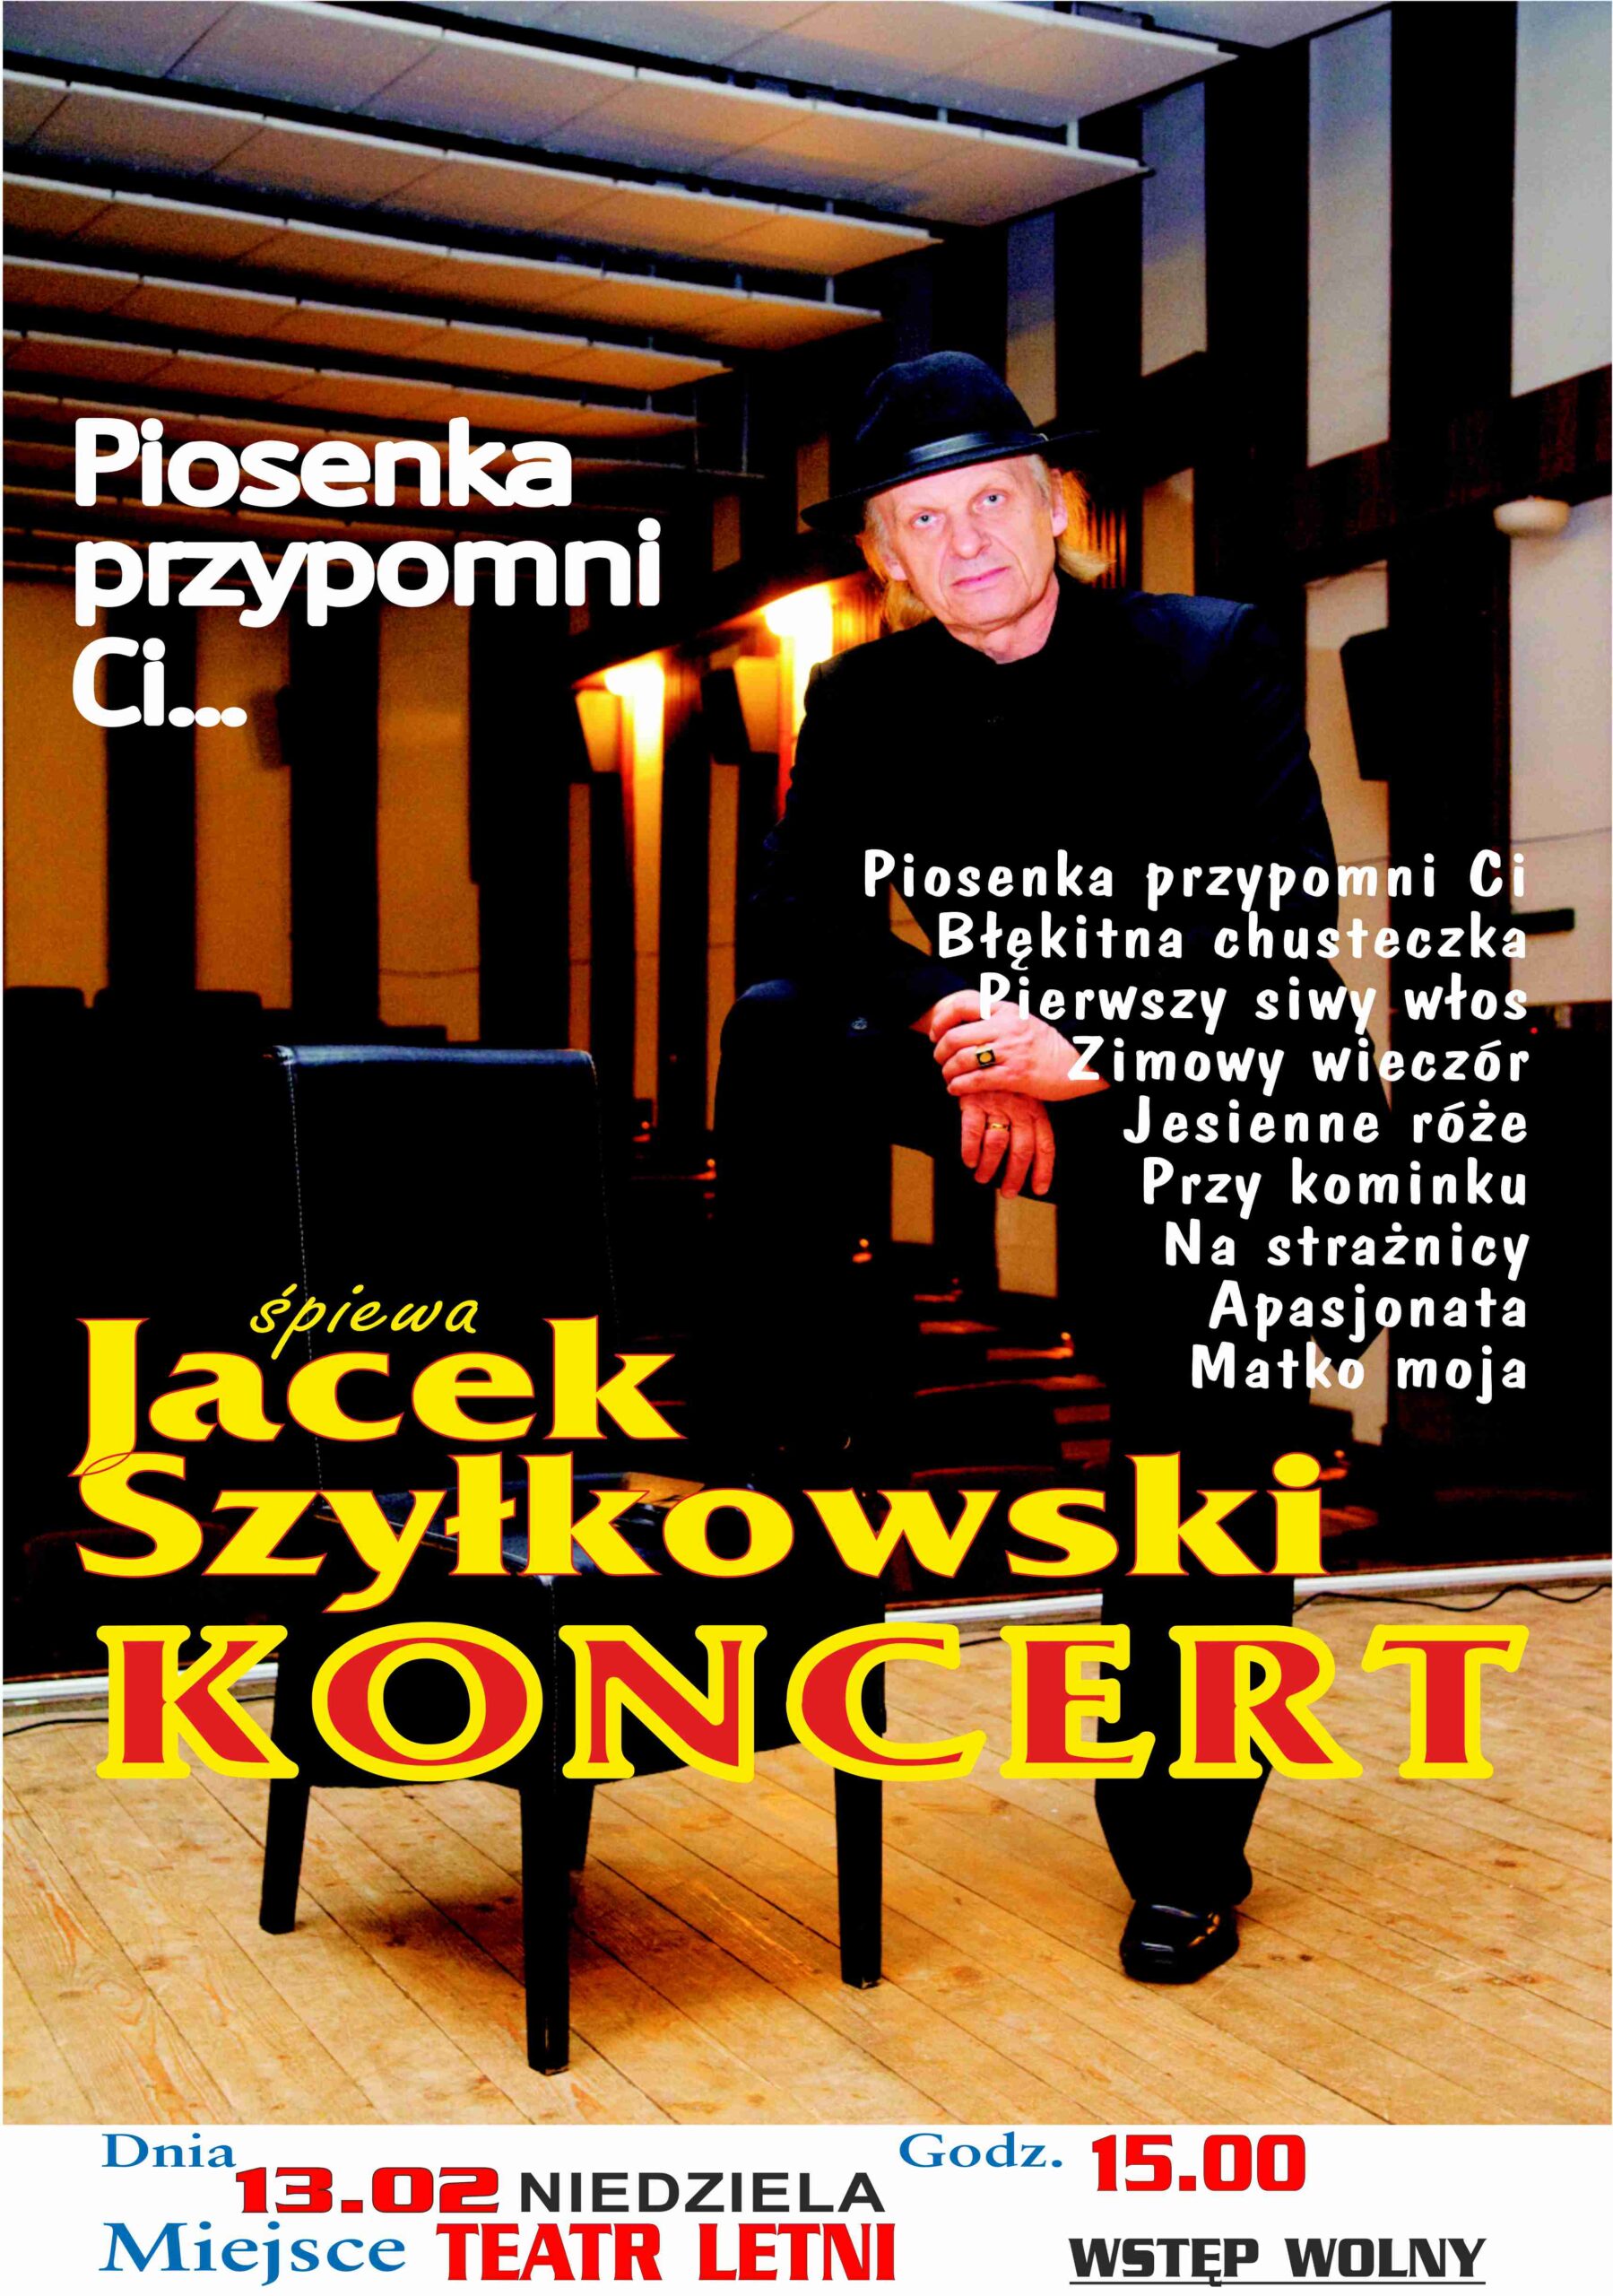 Jacek Szyłkowski “Piosenka Przypomni Ci…”